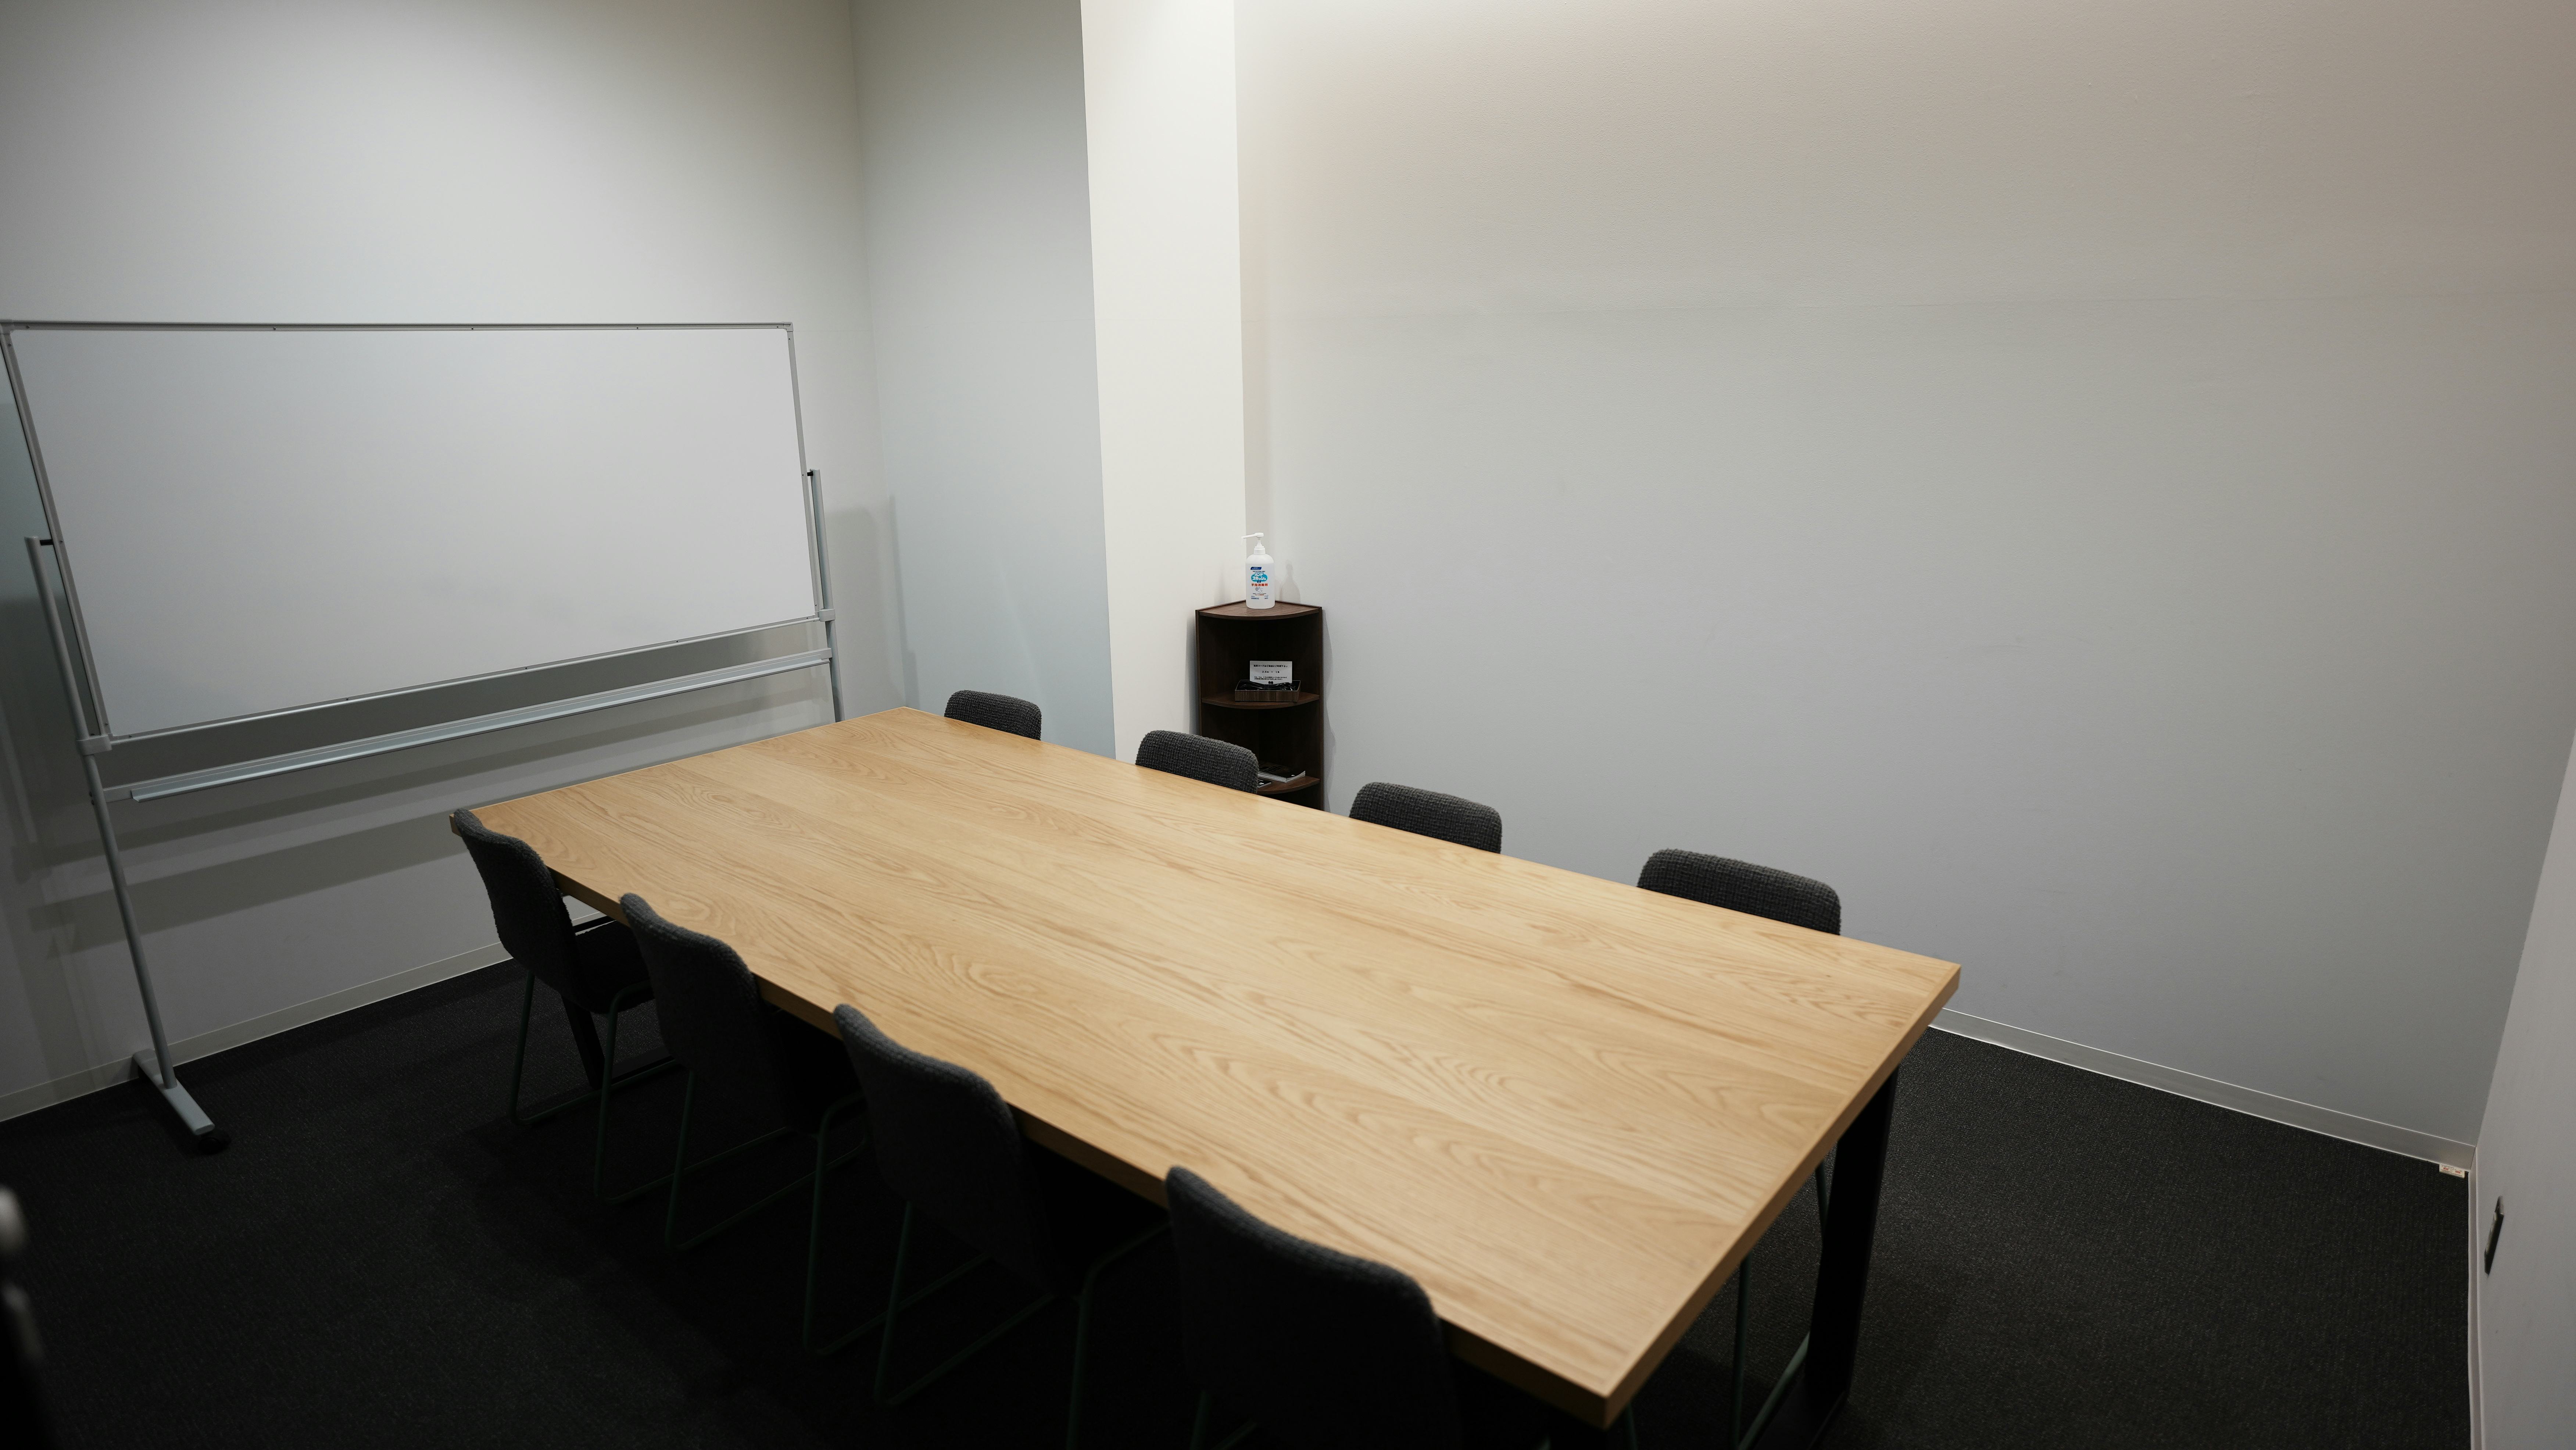 【TOGITOGI(トギトギ)】セミナーやワークショップに最適なコワーキング施設内の貸し会議室(会議室中)